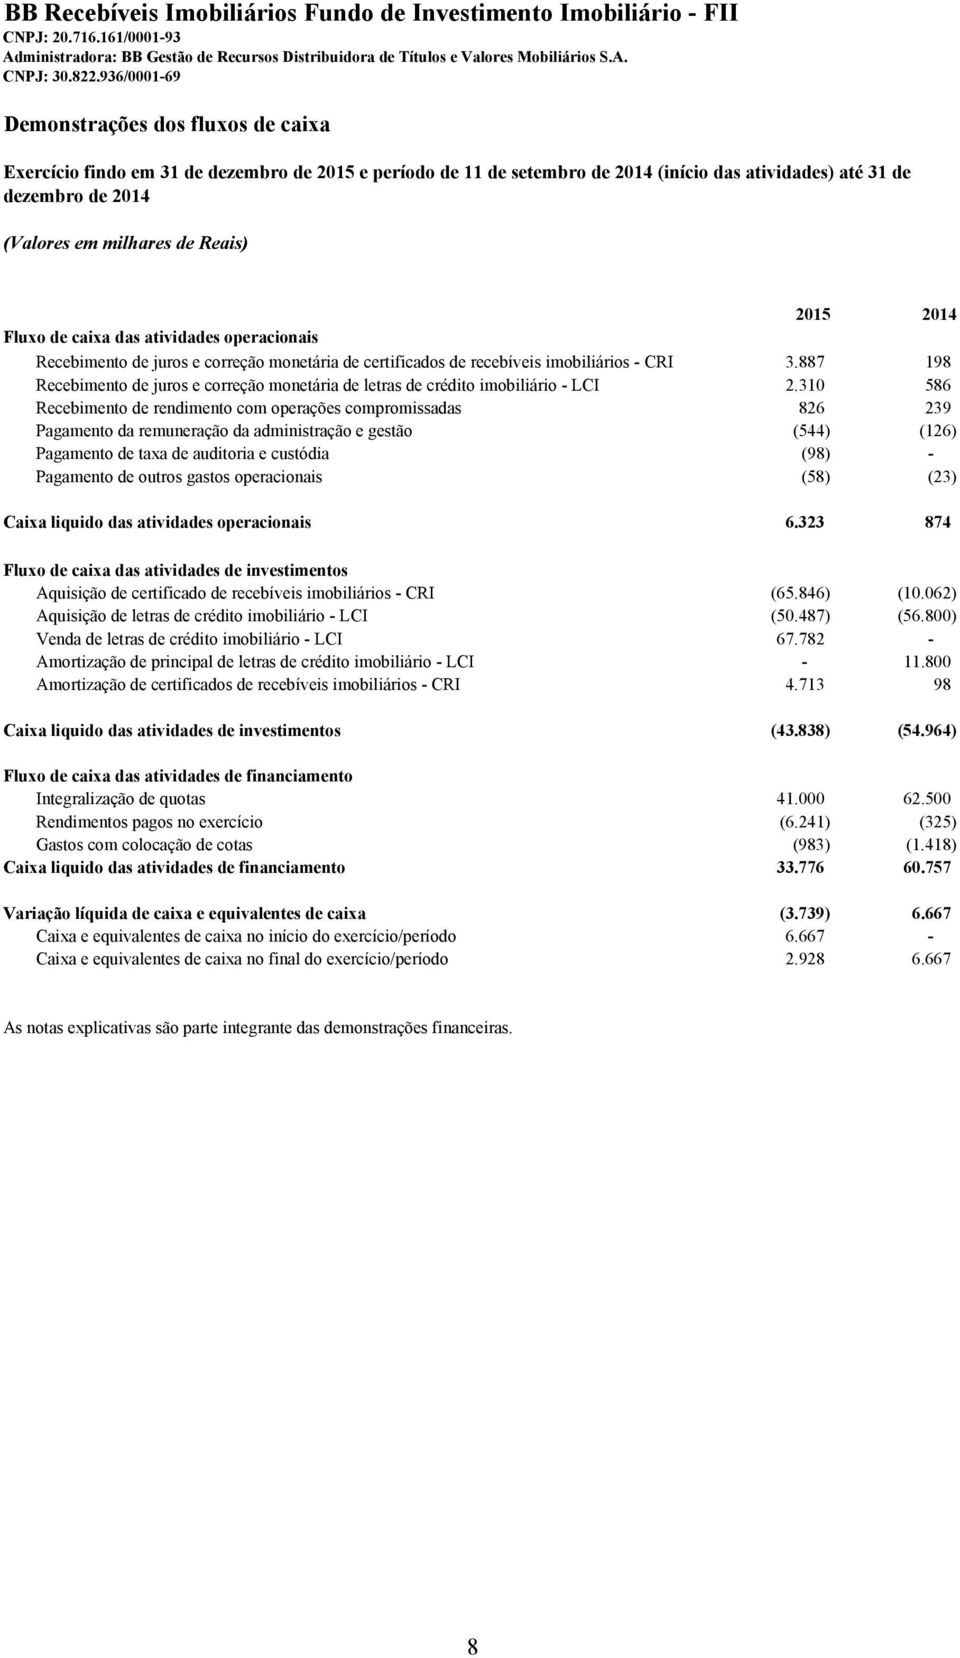 Reais) 2015 2014 Fluxo de caixa das atividades operacionais Recebimento de juros e correção monetária de certificados de recebíveis imobiliários - CRI 3.